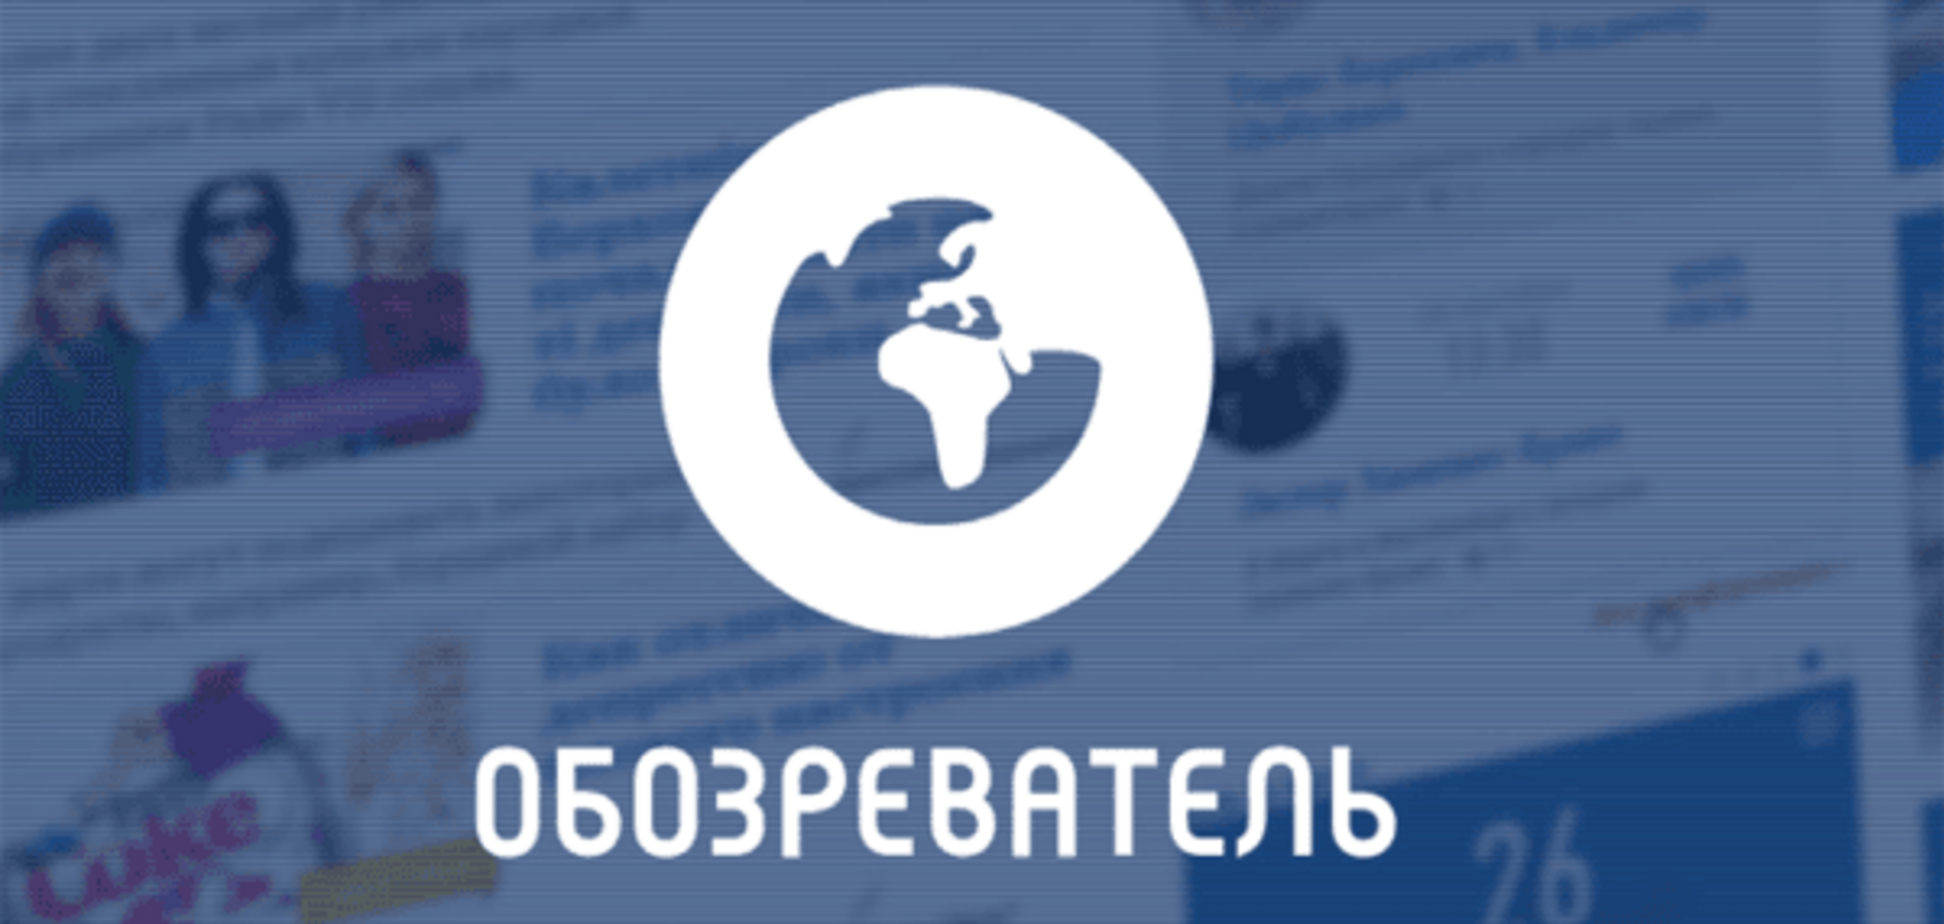 'Обозреватель' увійшов у топ найпопулярніших сайтів в Україні